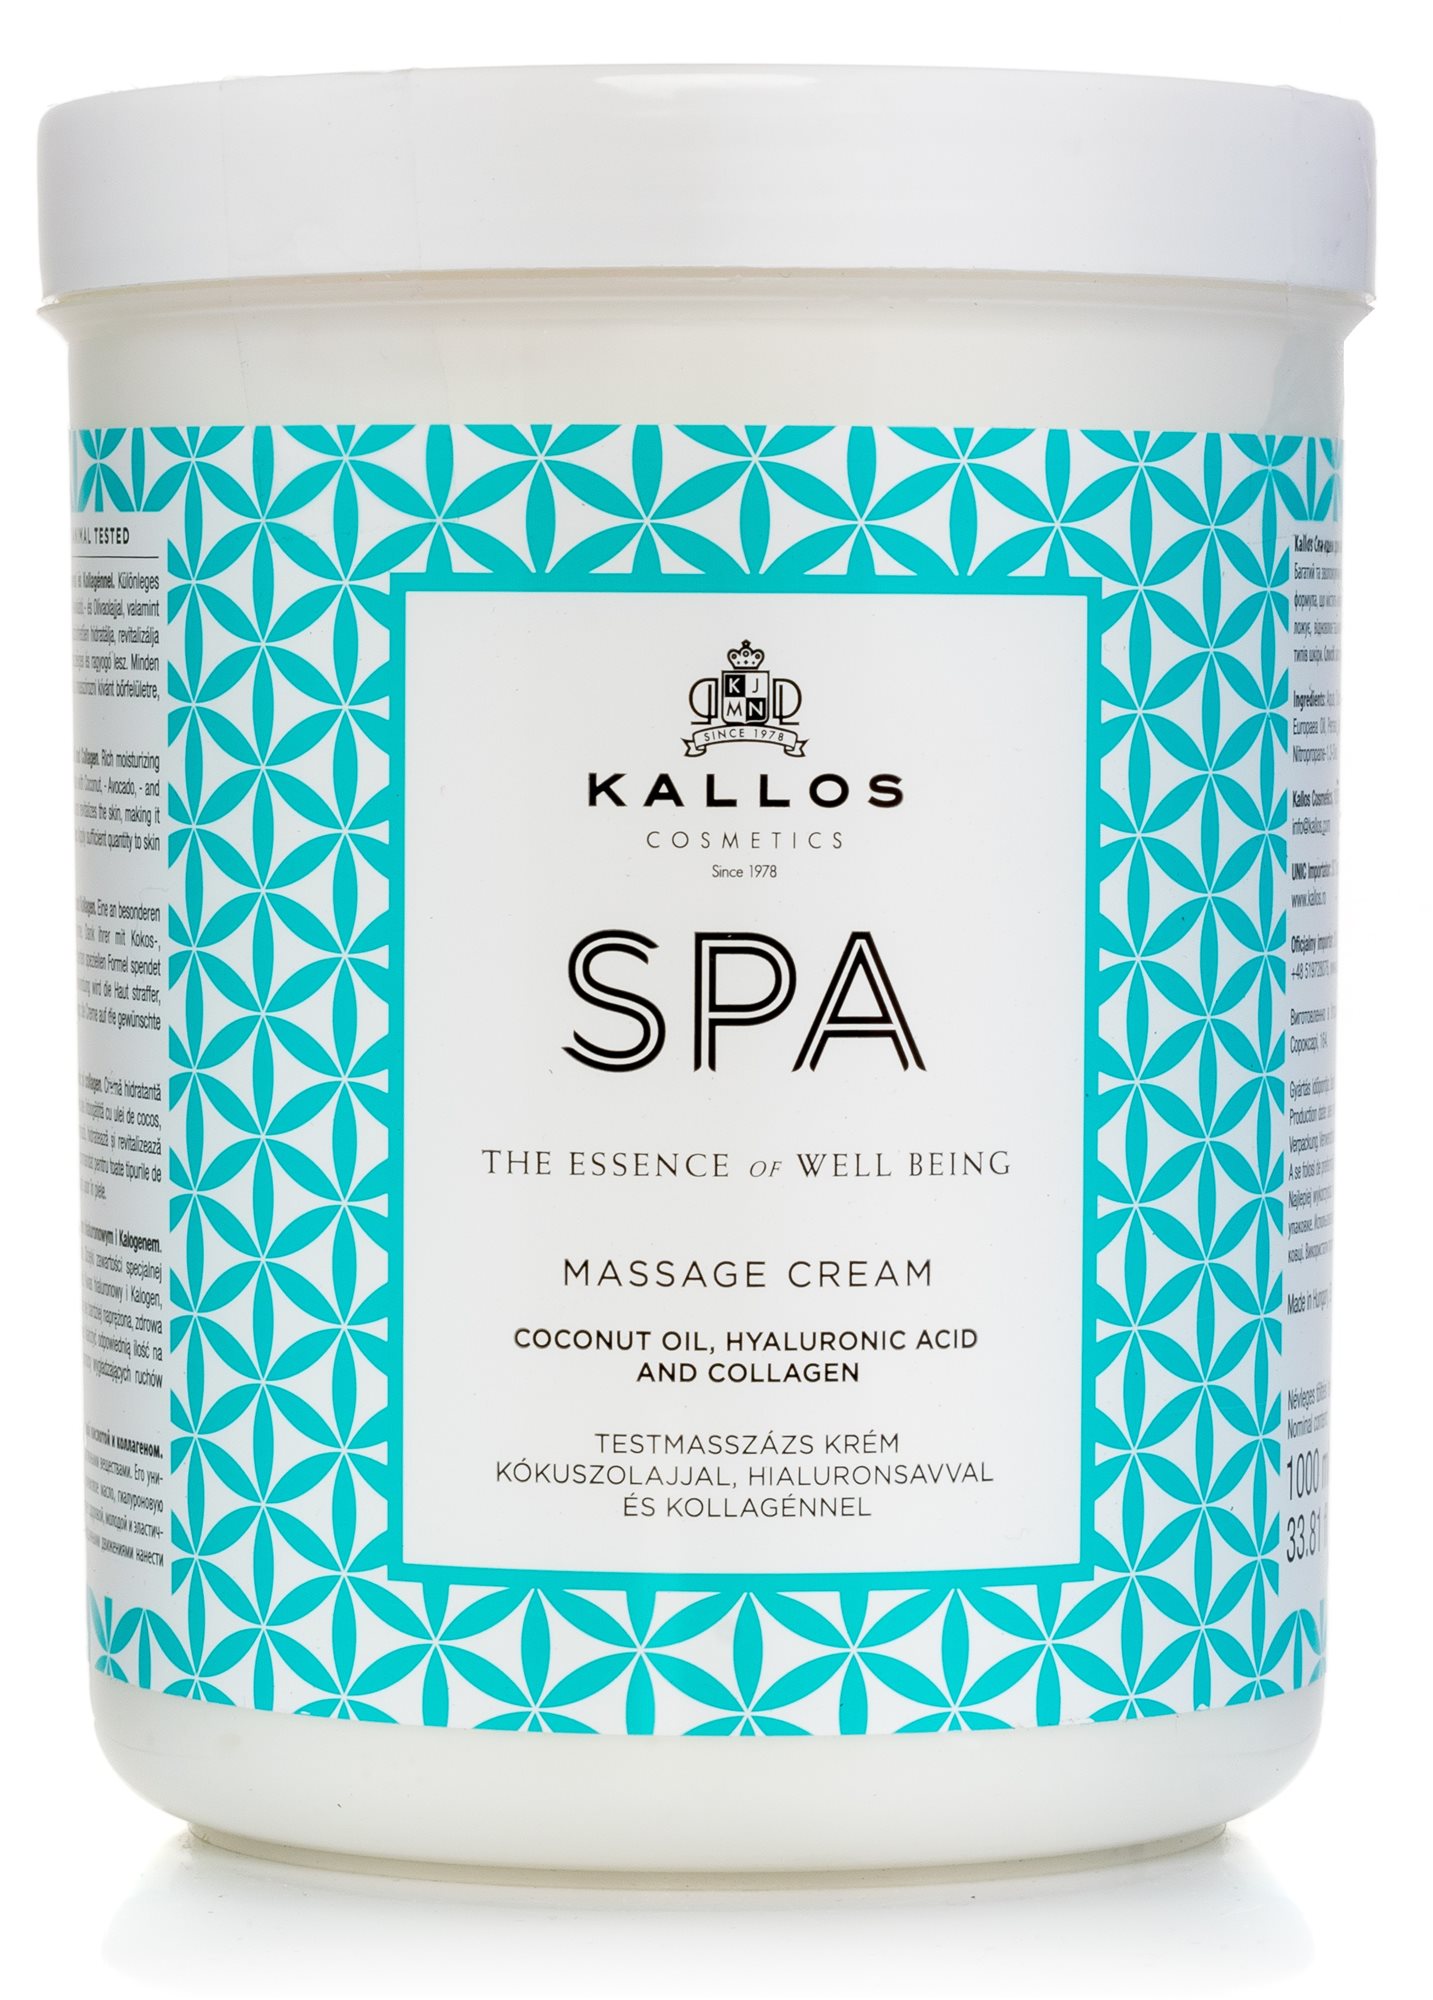 KALLOS Spa Massage Cream 1000 ml